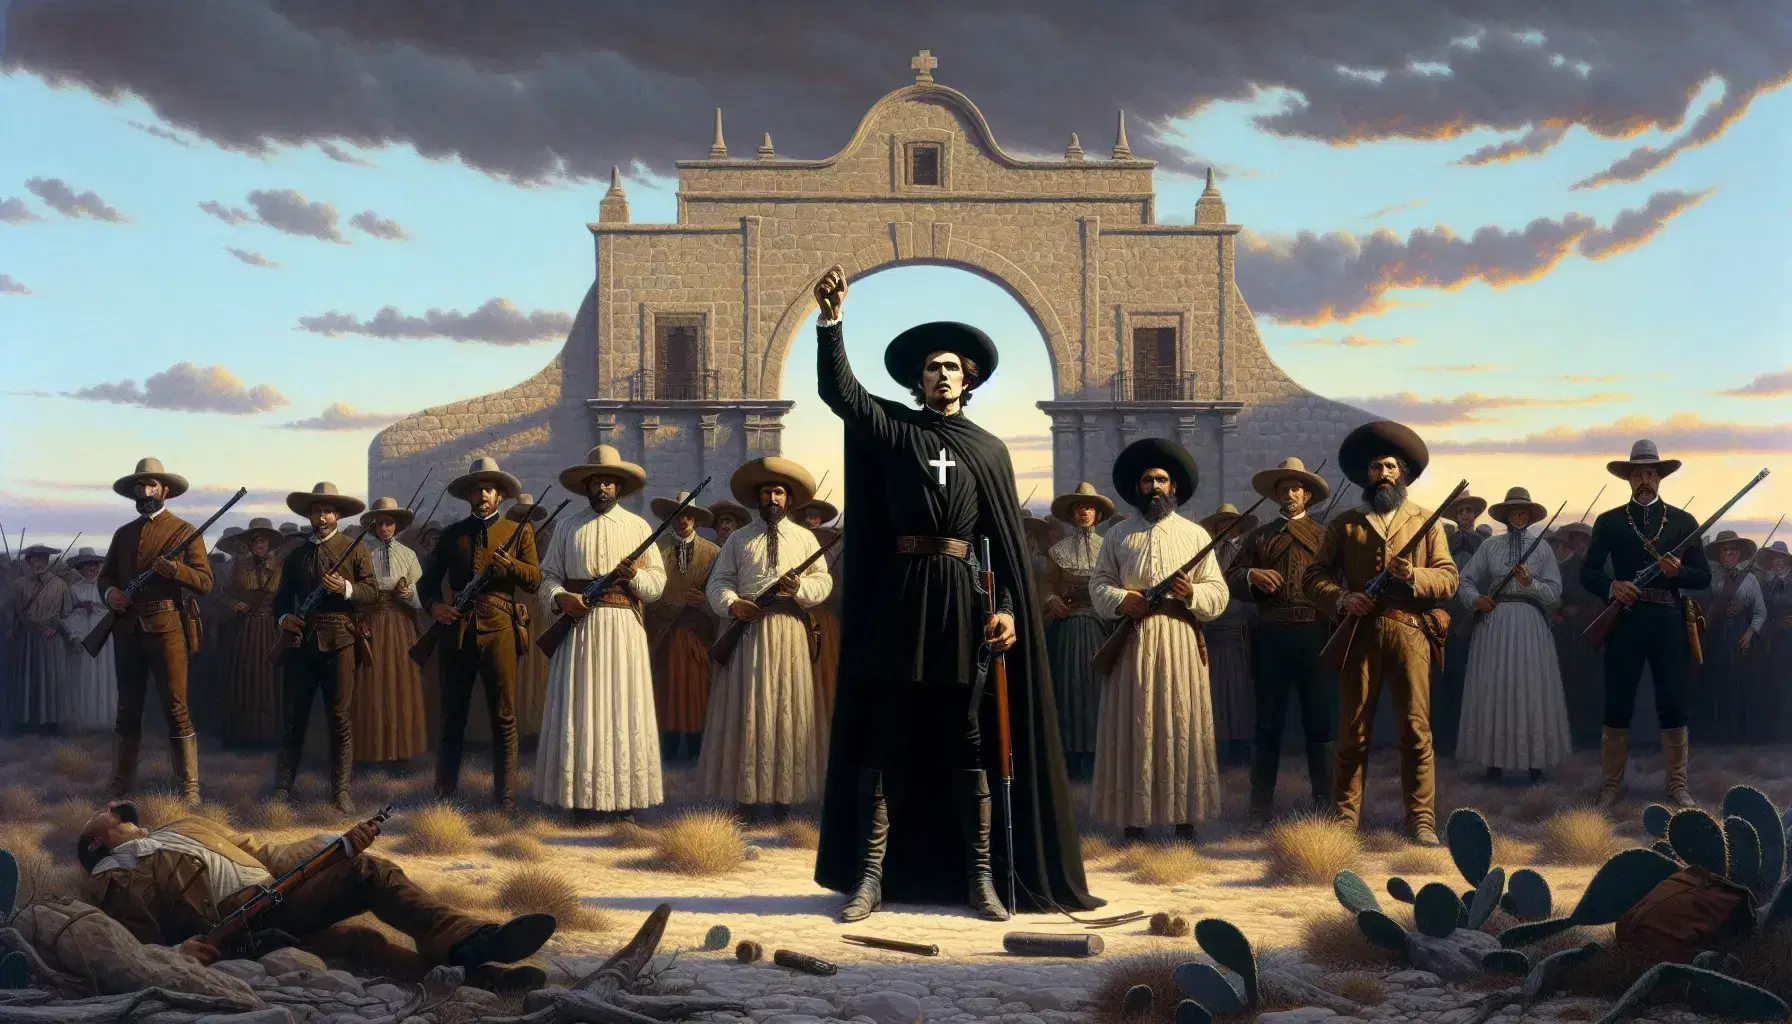 Grupo de figuras en atuendos coloniales con un líder en sotana negra, rodeado de personas armadas ante un edificio de arquitectura colonial al amanecer o atardecer.